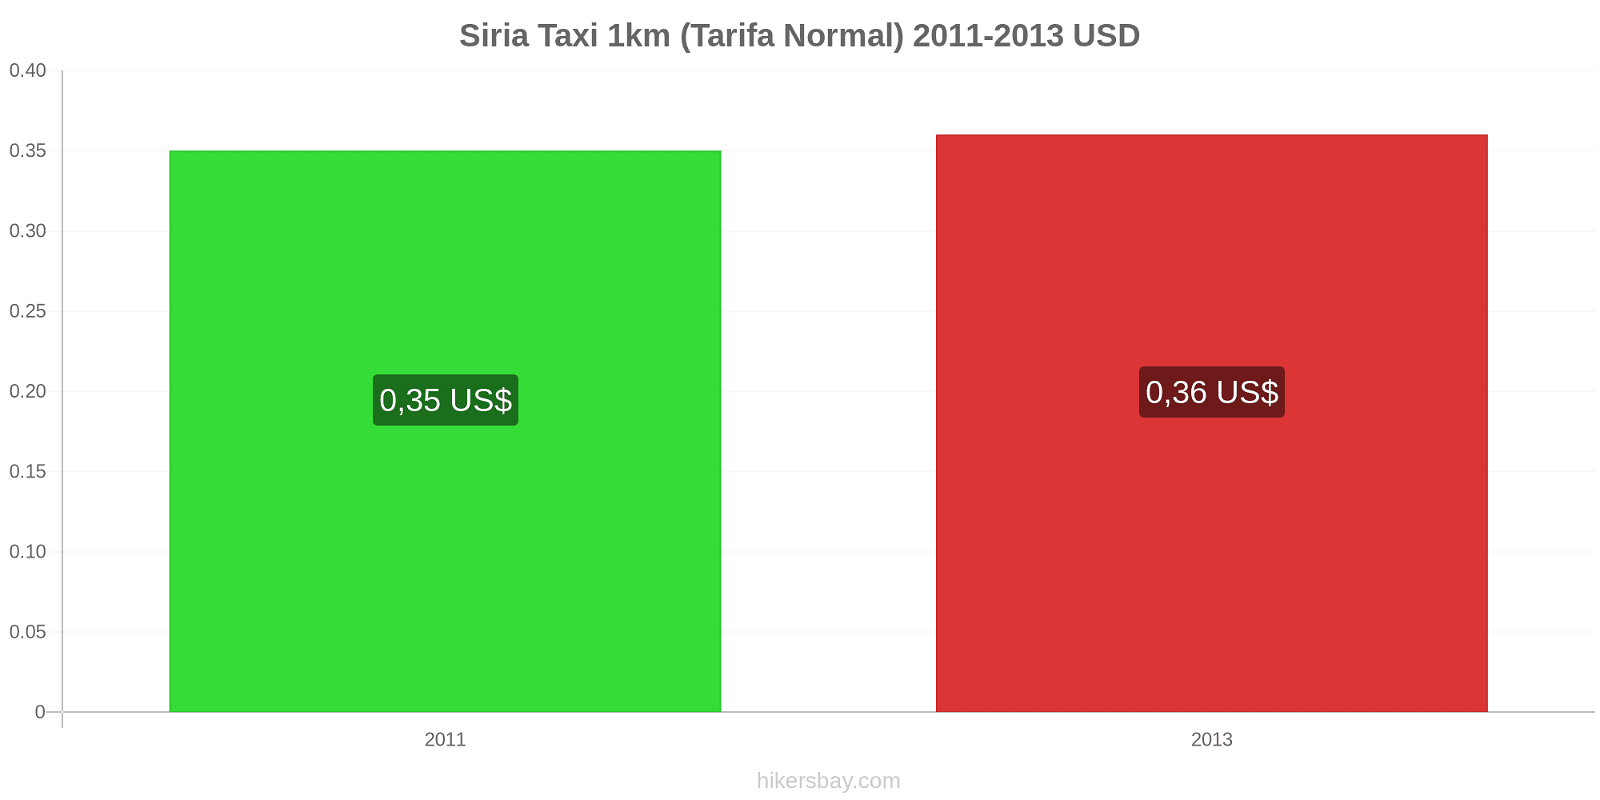 Siria cambios de precios Taxi 1km (tarifa normal) hikersbay.com